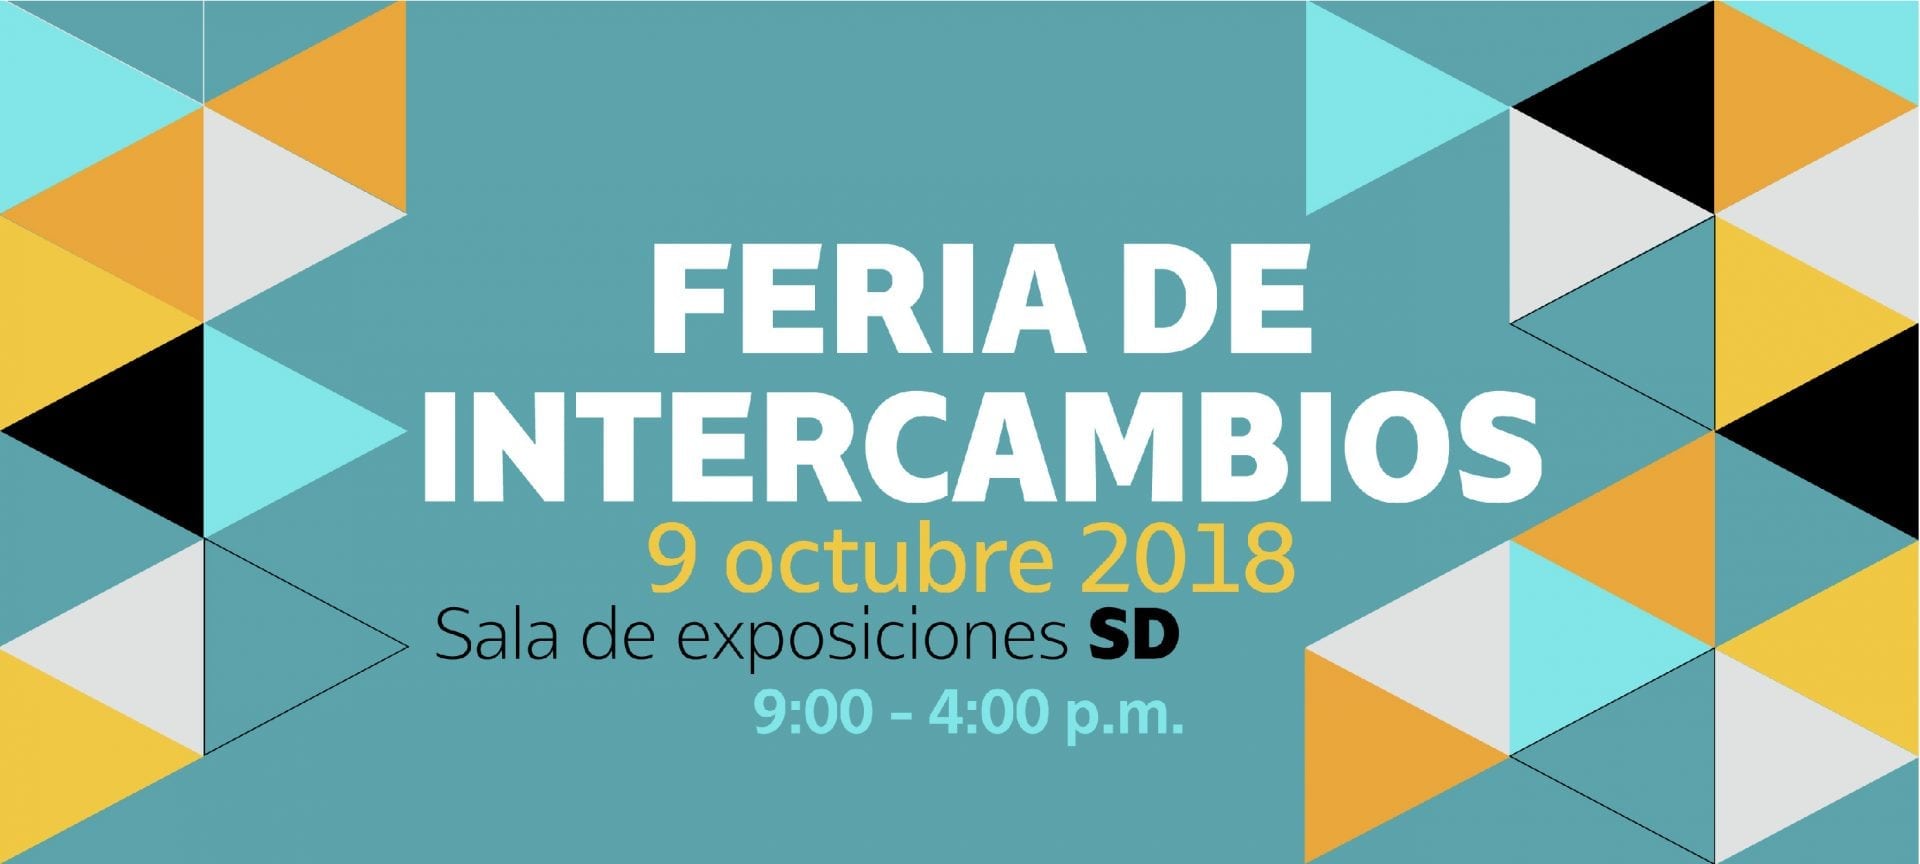 Feria de Intercambios 20182